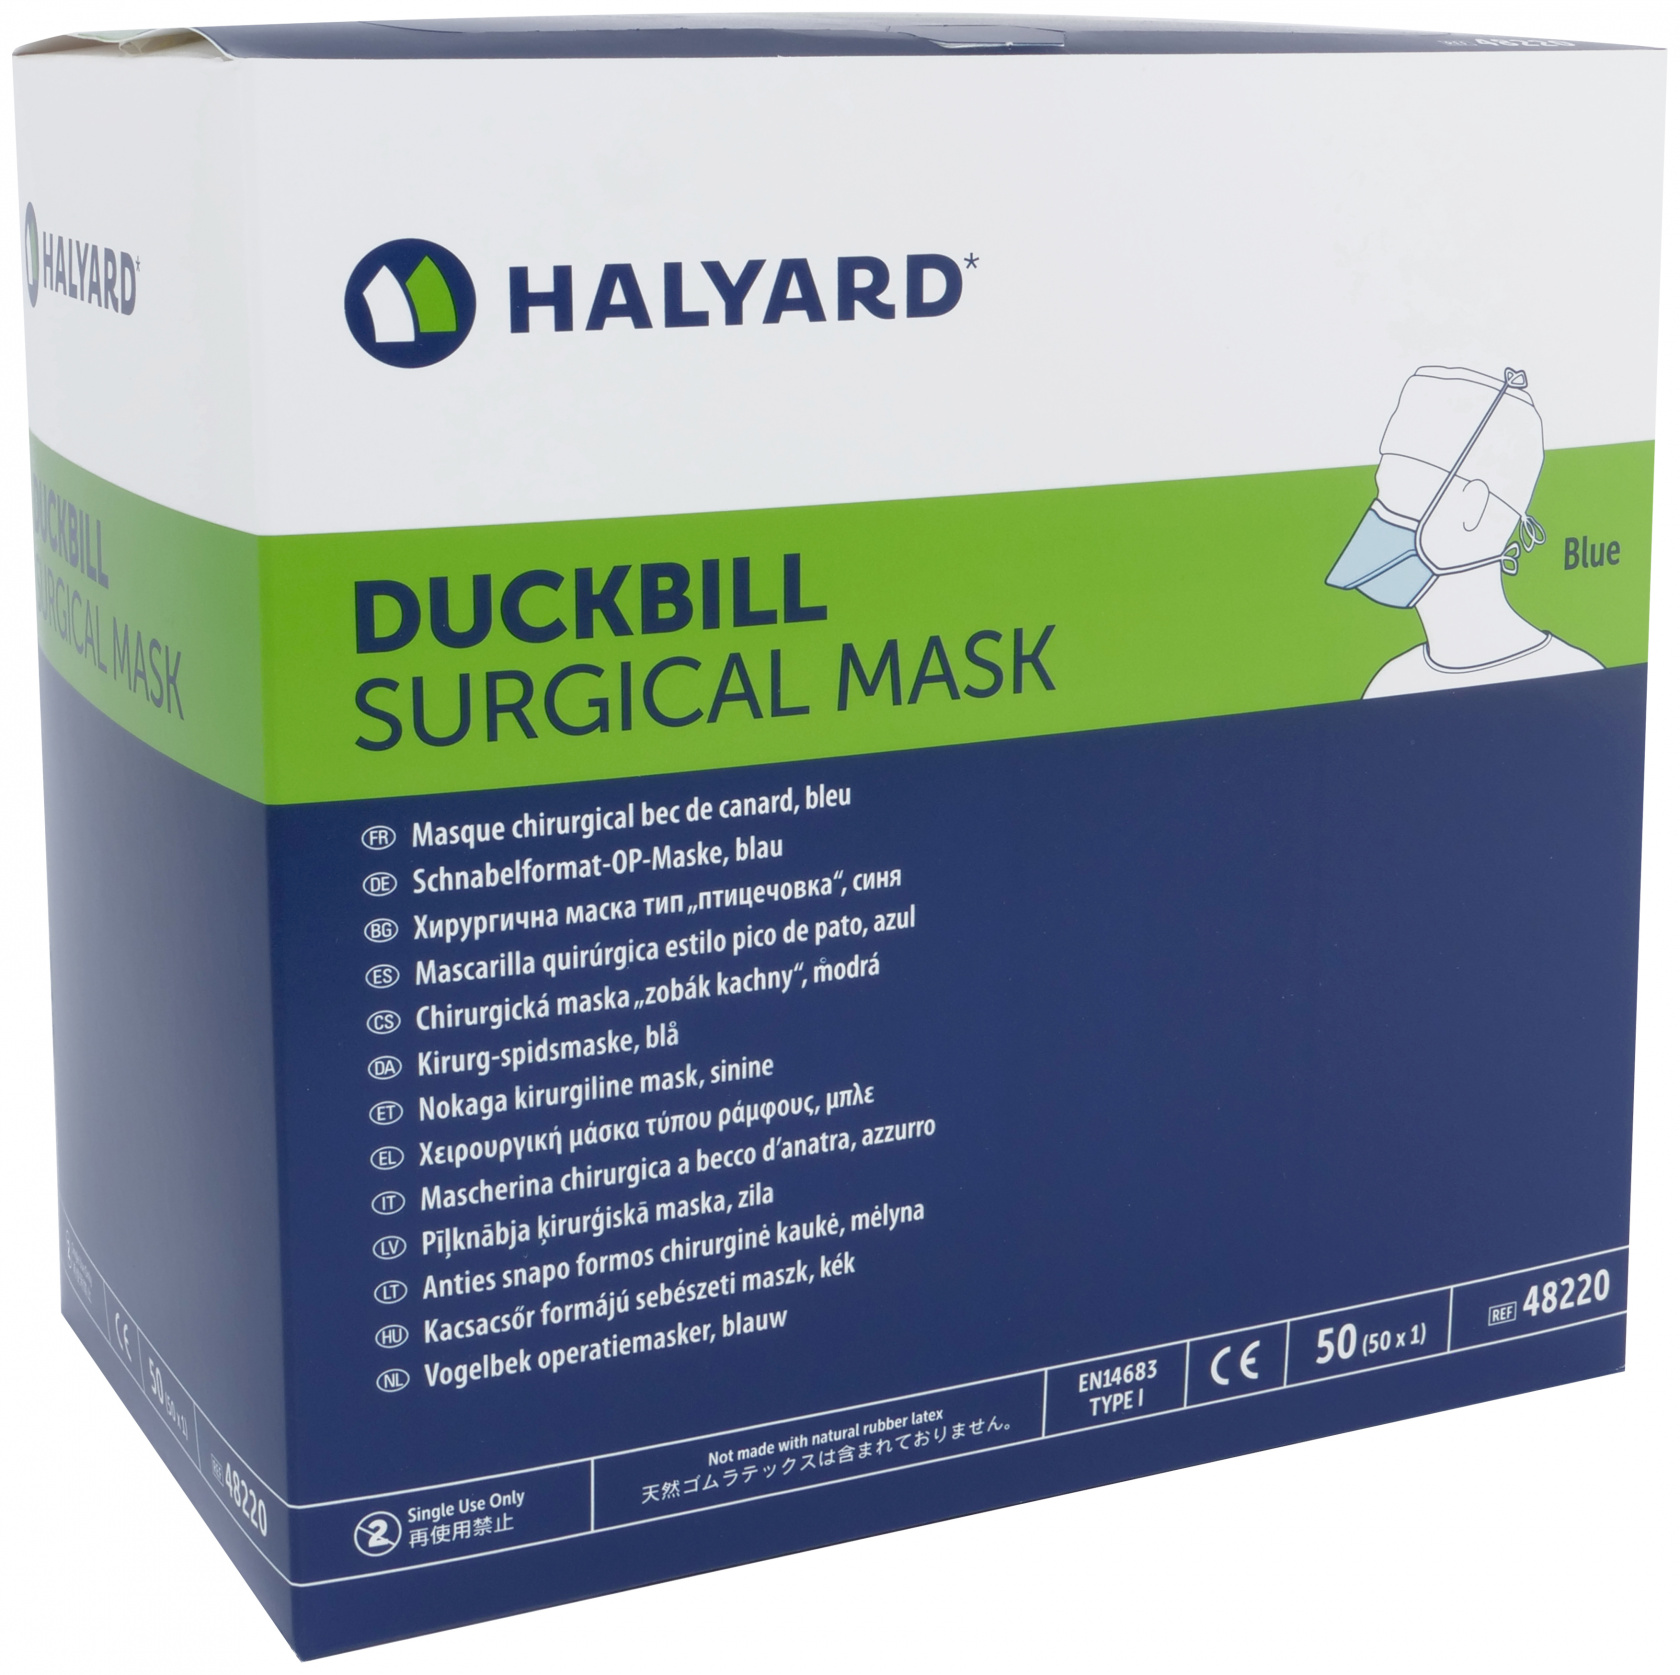 Halyard Mask Surgical Duckbill Blue image 0